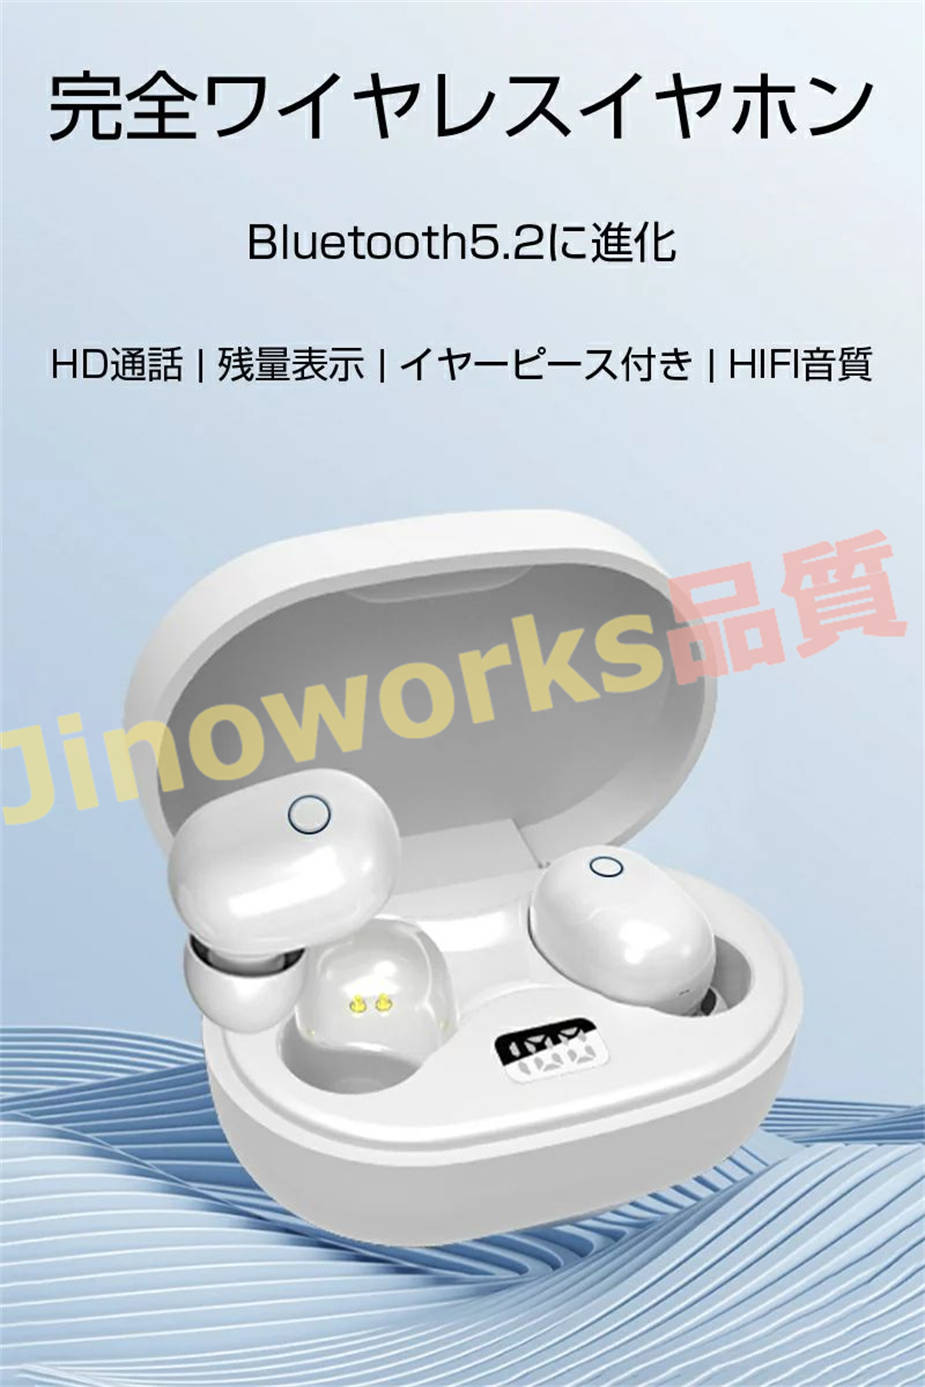 ワイヤレスヘッドセット Bluetooth5.2 イヤホン Hi-Fi高音質 バッテリー残電量表示 ...